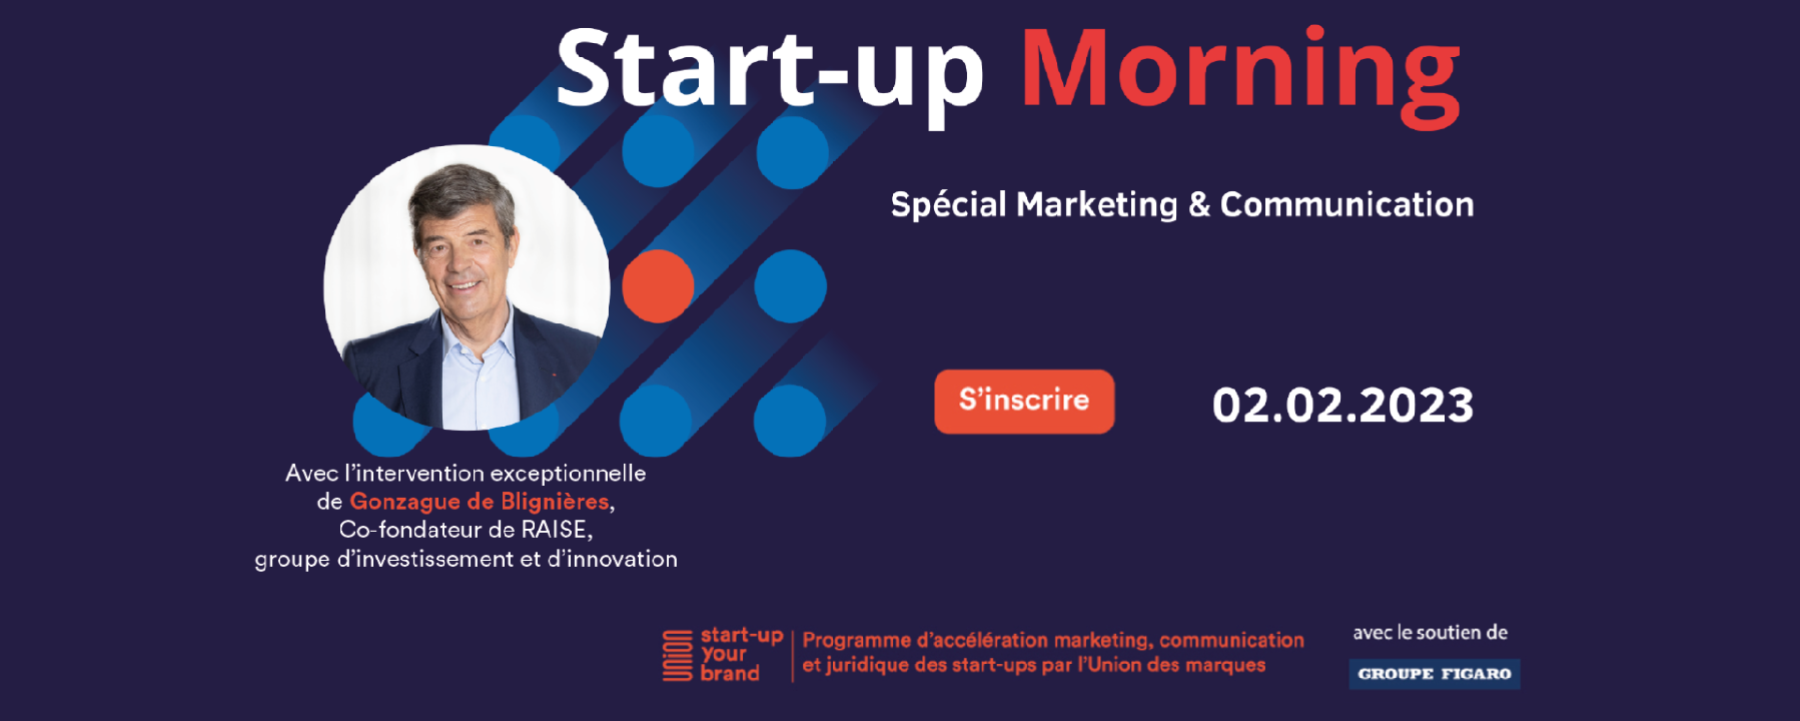 Start-up morning #5